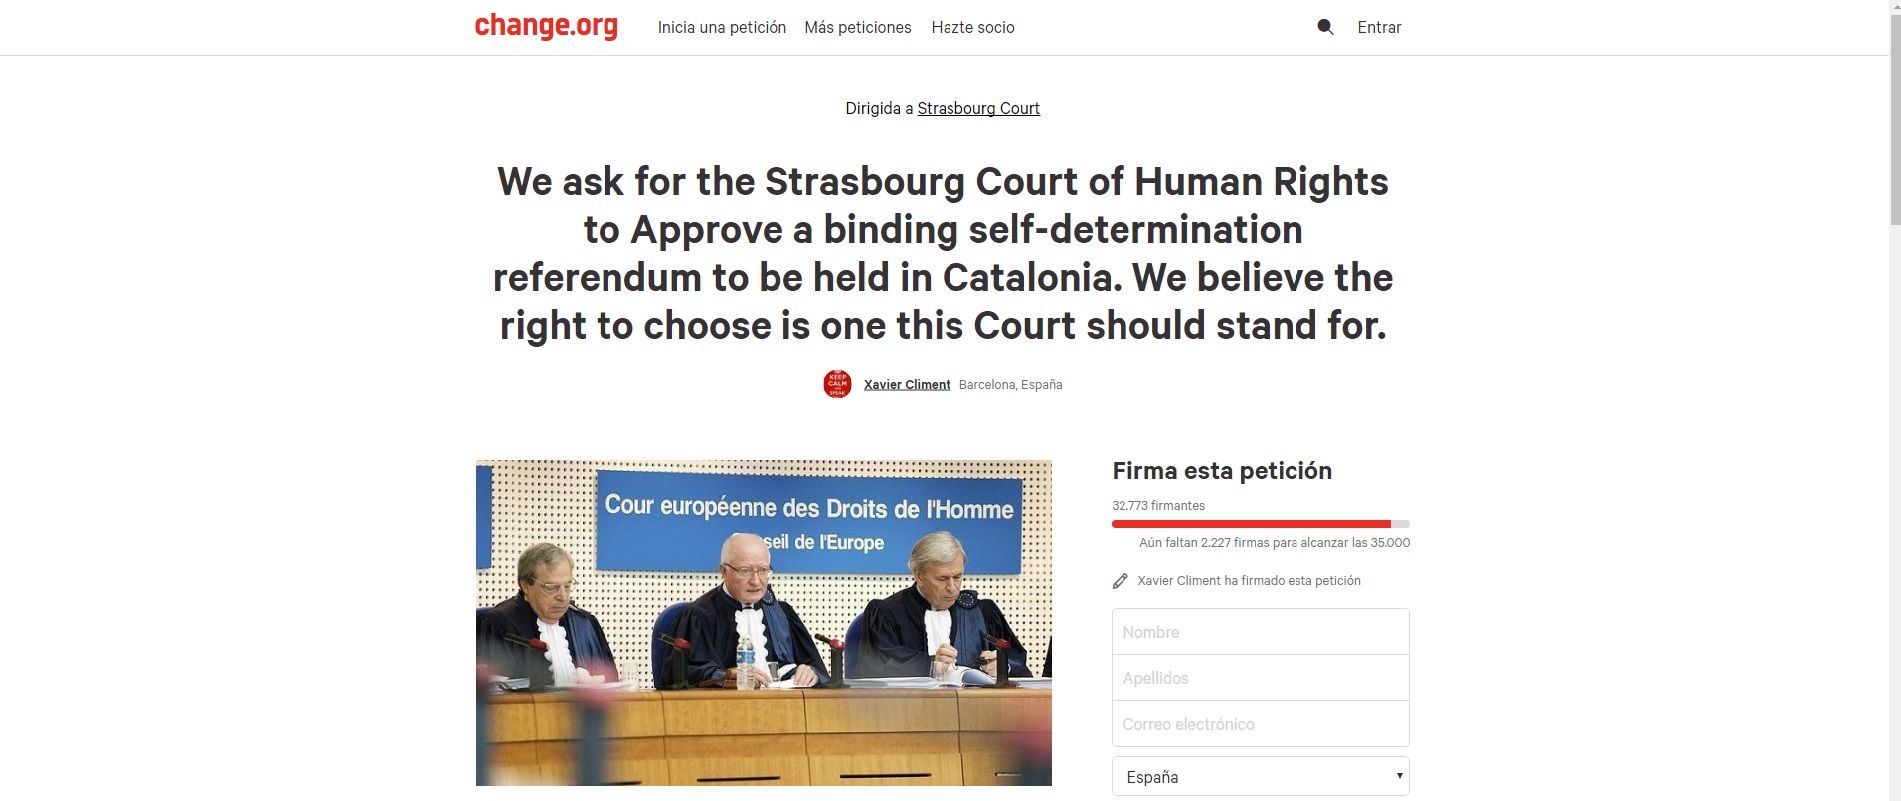 Una iniciativa pedirá al Tribunal de Derechos Humanos autorizar el referéndum en Catalunya